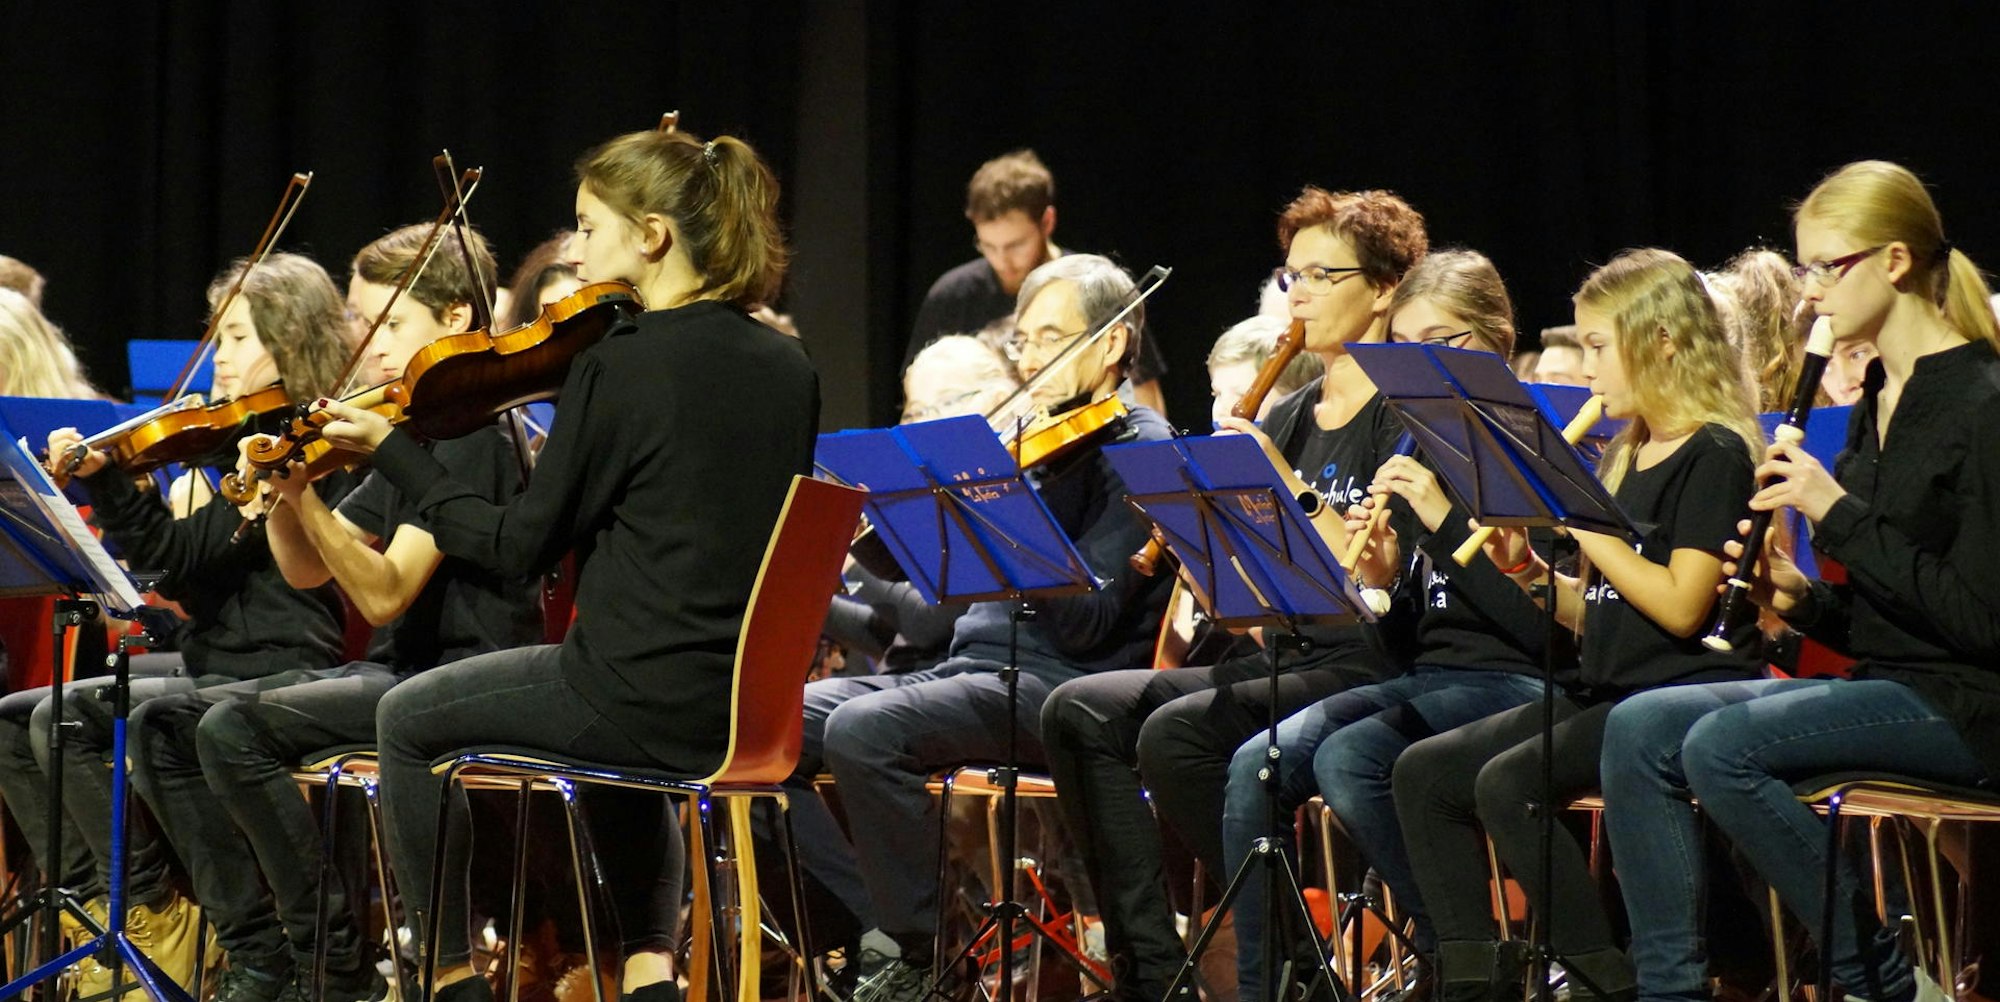 Mit öffentlichen Auftritten trägt die kommunale Musikschule La Musica zum Kulturleben in den Städten Bergheim, Kerpen, Elsdorf, Bedburg und Pulheim bei.